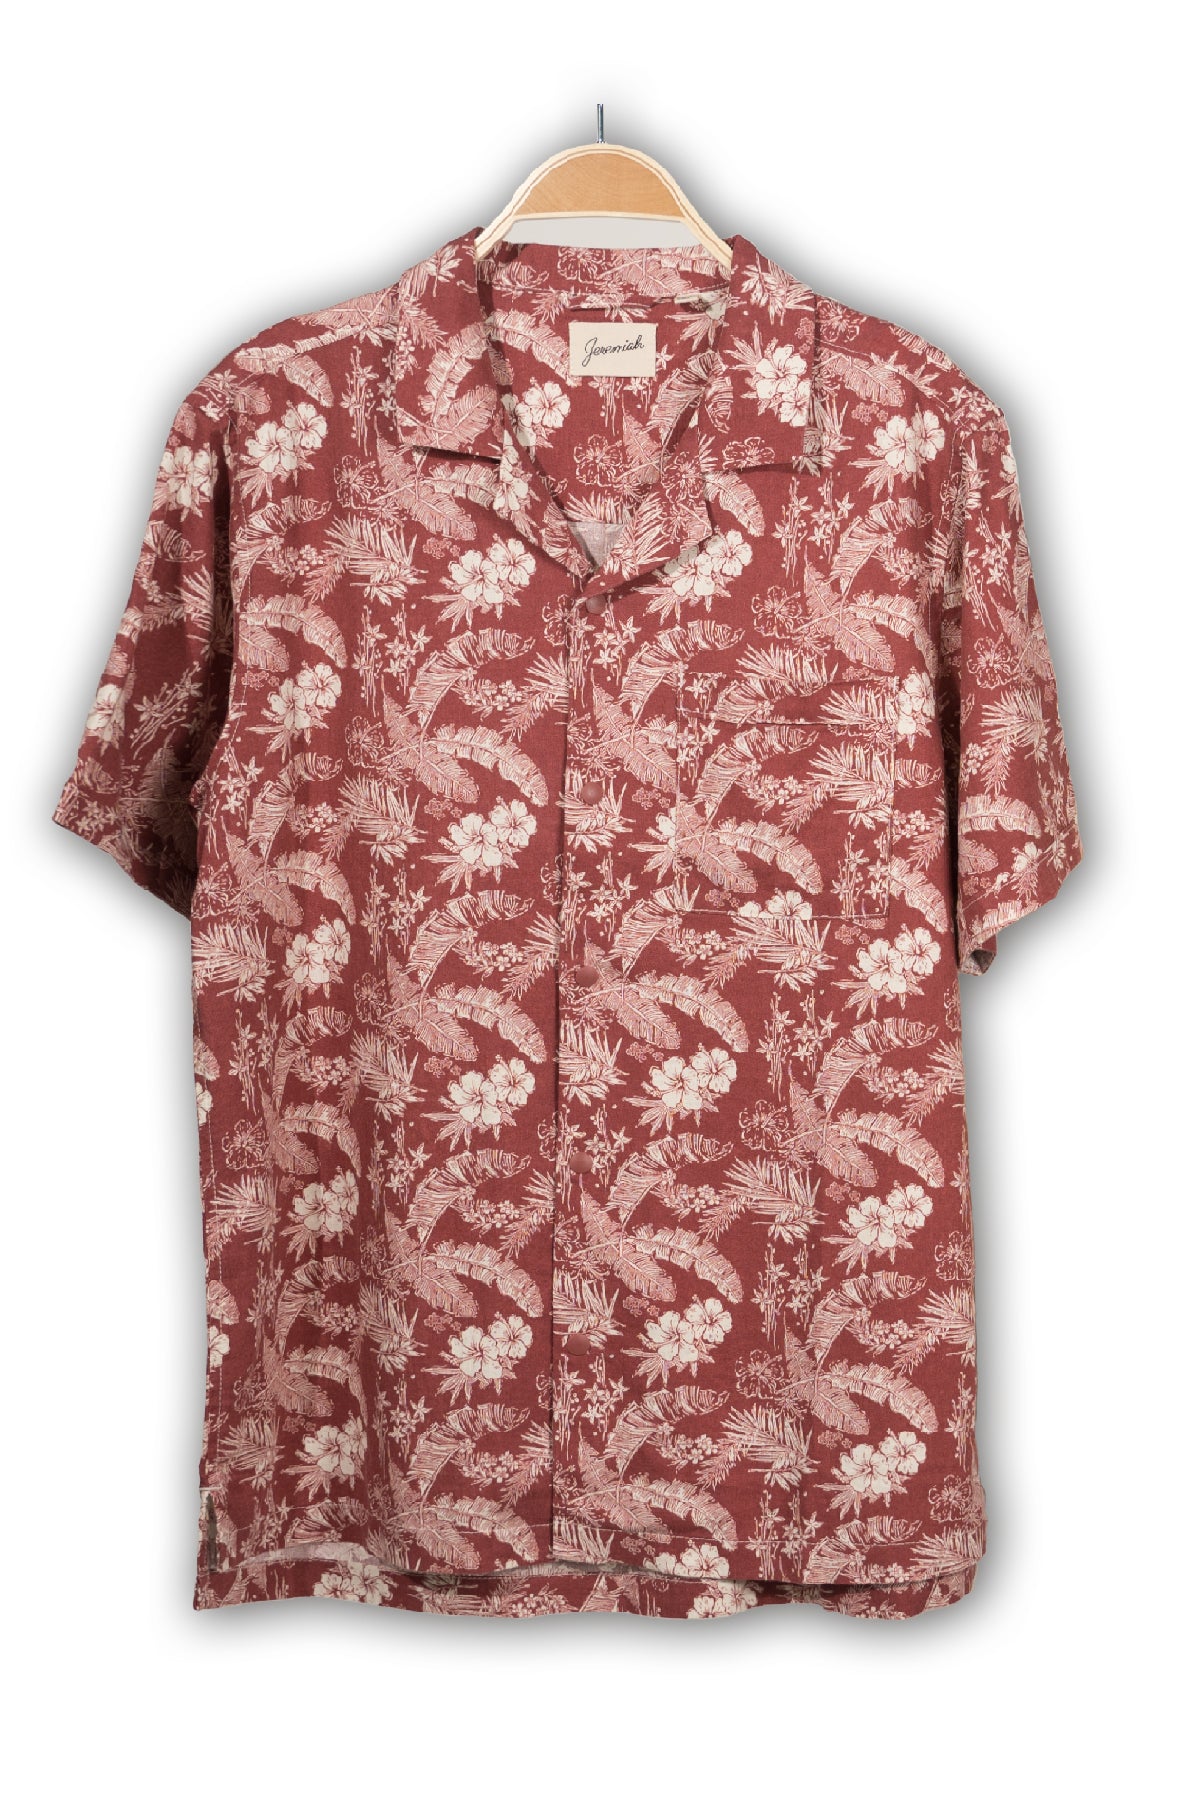 DEL REY  Printed Linen Viscose Camp Shirt